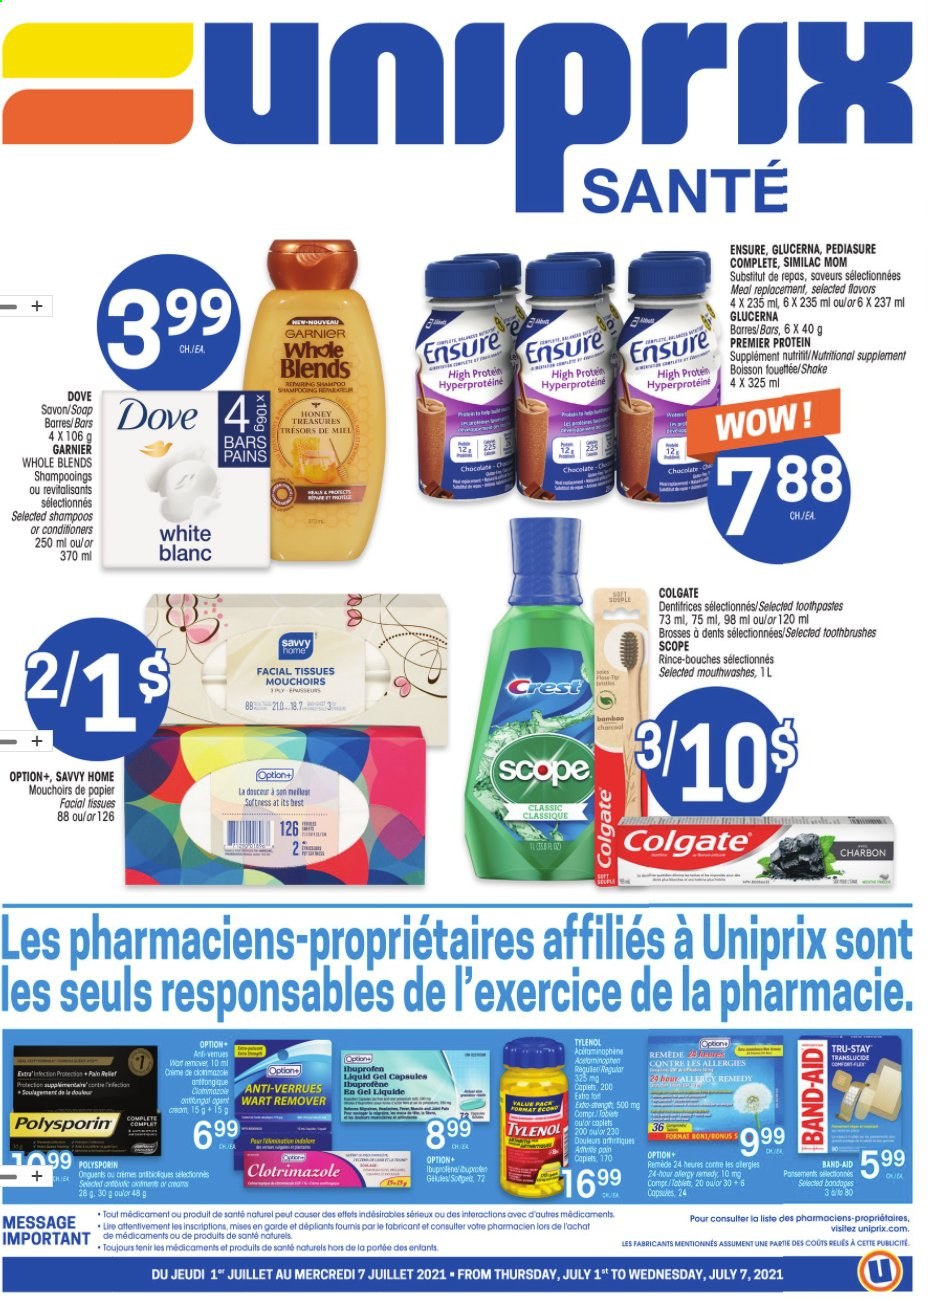 thumbnail - Circulaire Uniprix Santé - 01 Juillet 2021 - 07 Juillet 2021 - Produits soldés - mouchoirs, Colgate, Dove, Garnier. Page 1.